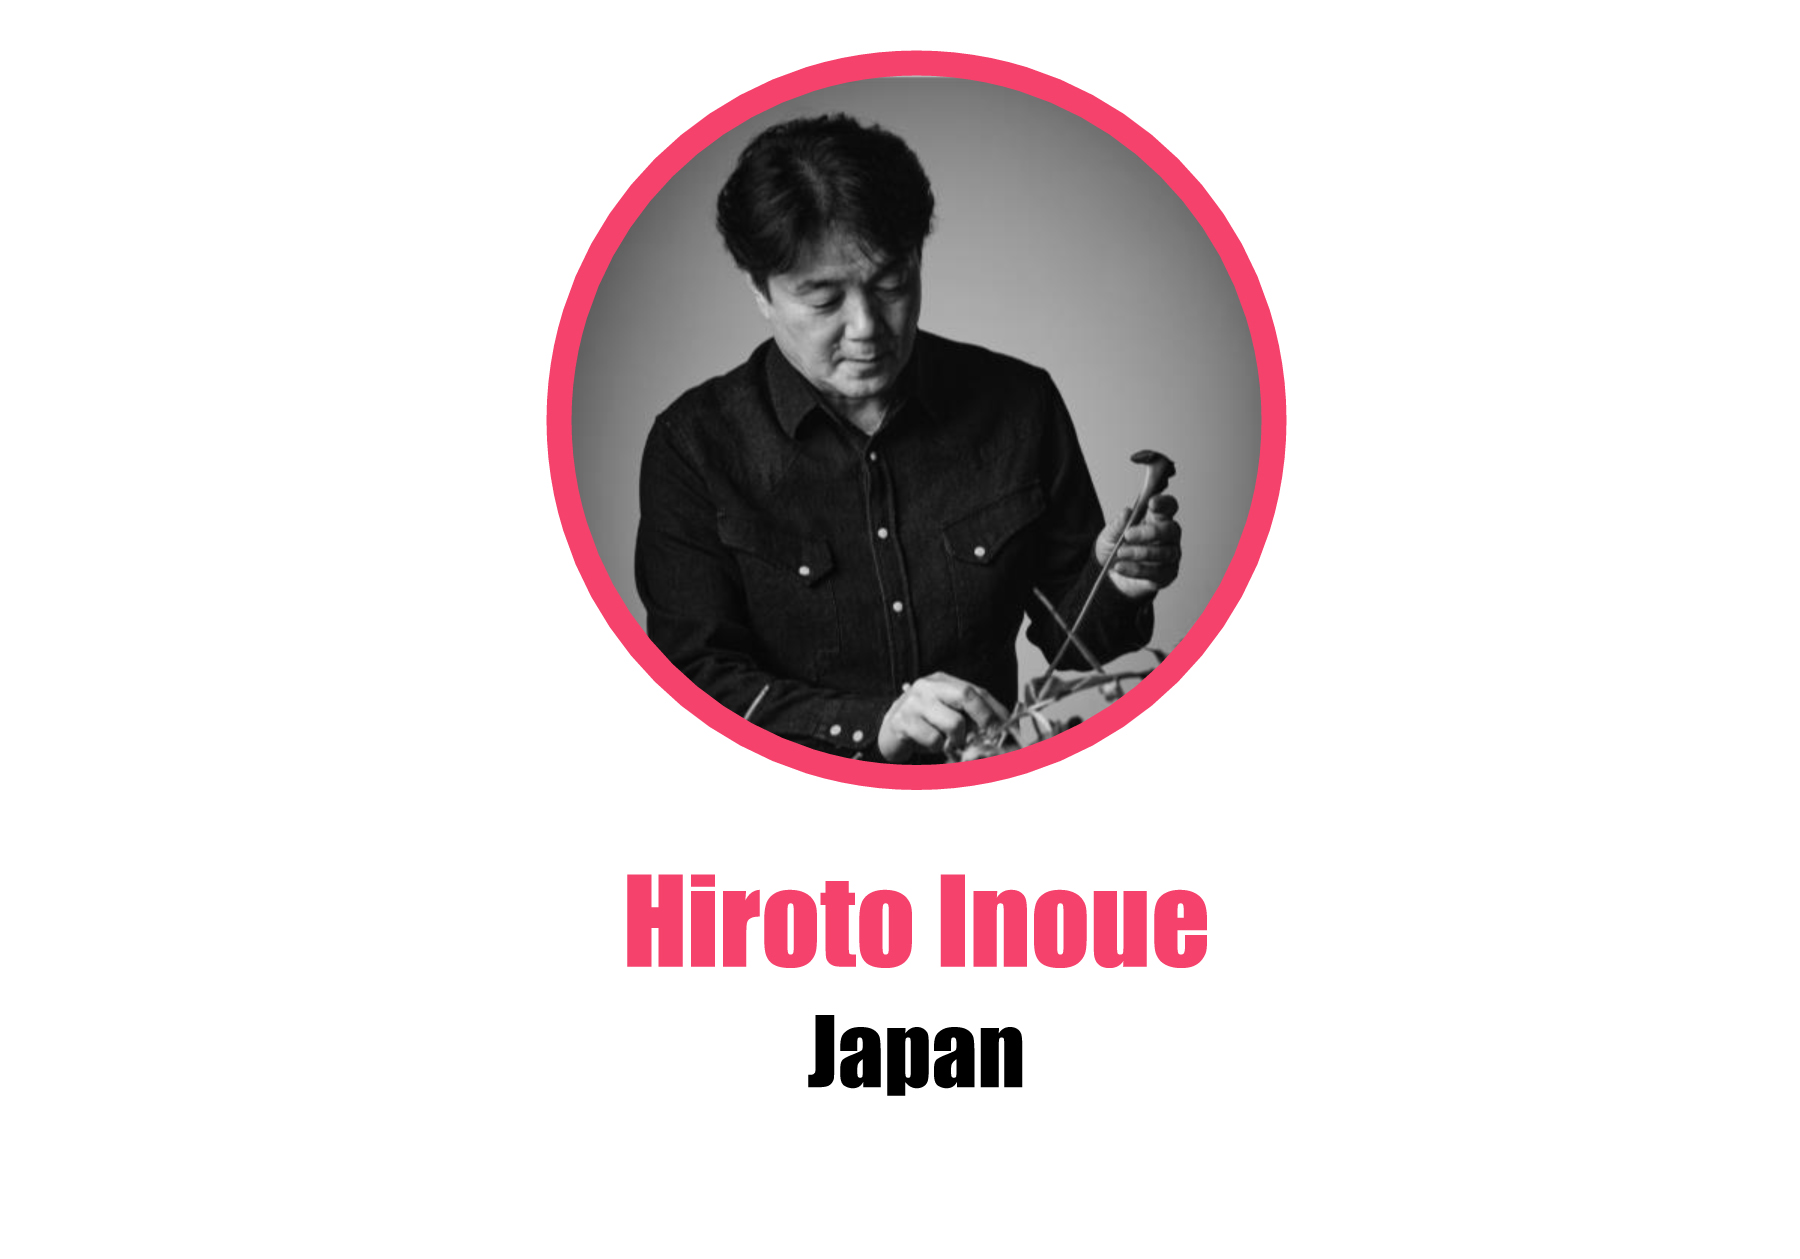 Japan_Hiroto Inoue